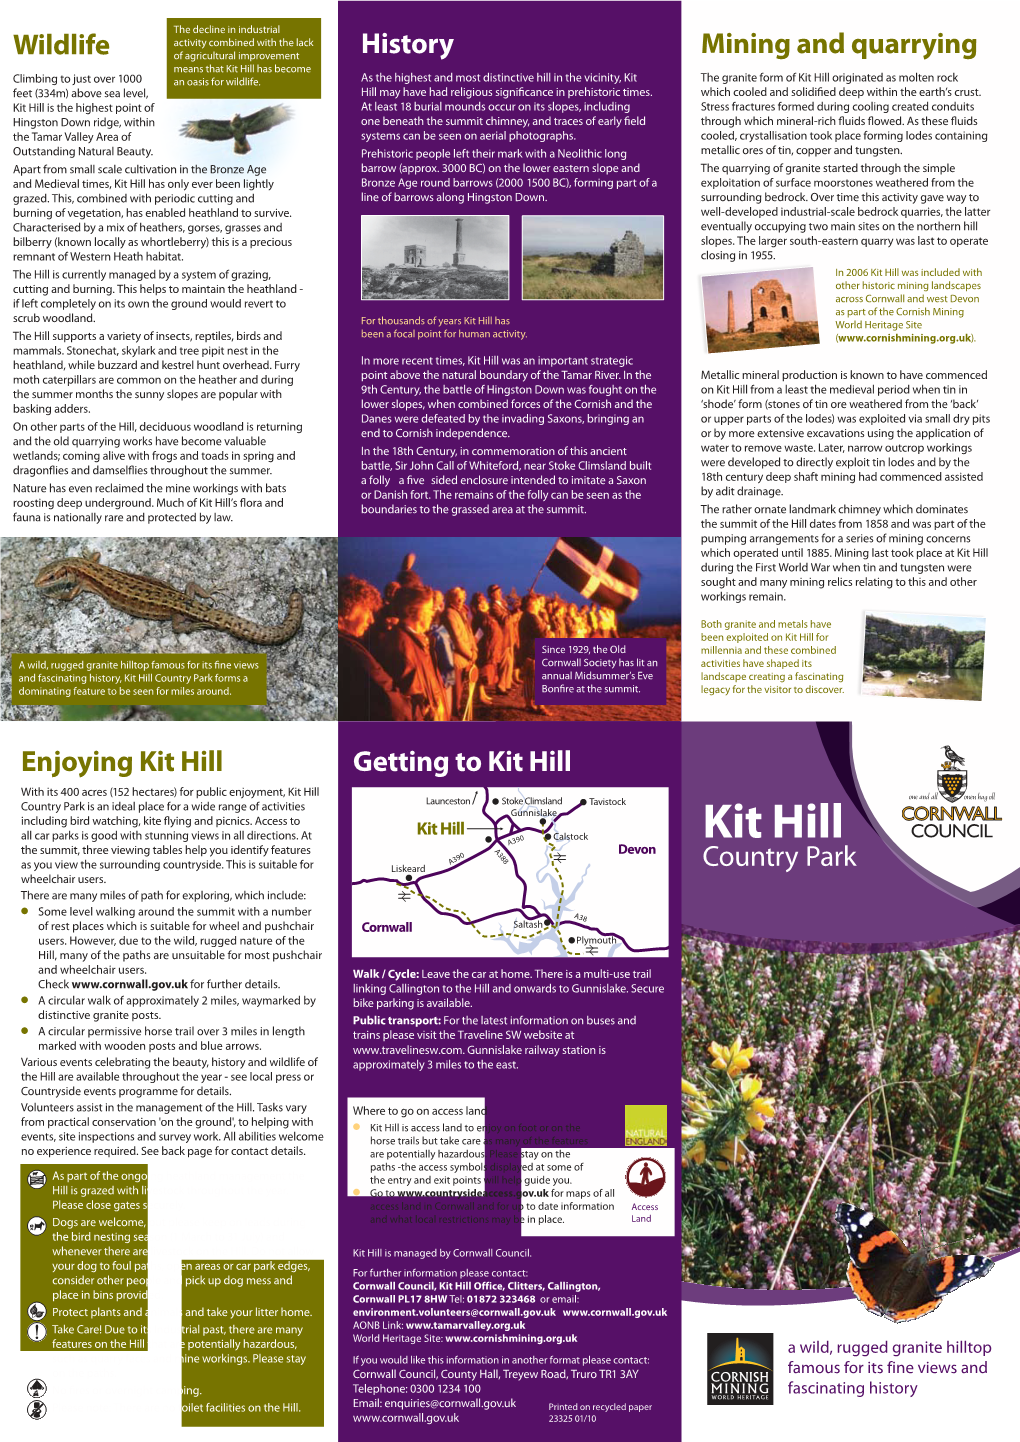 Download the Kit Hill Leaflet